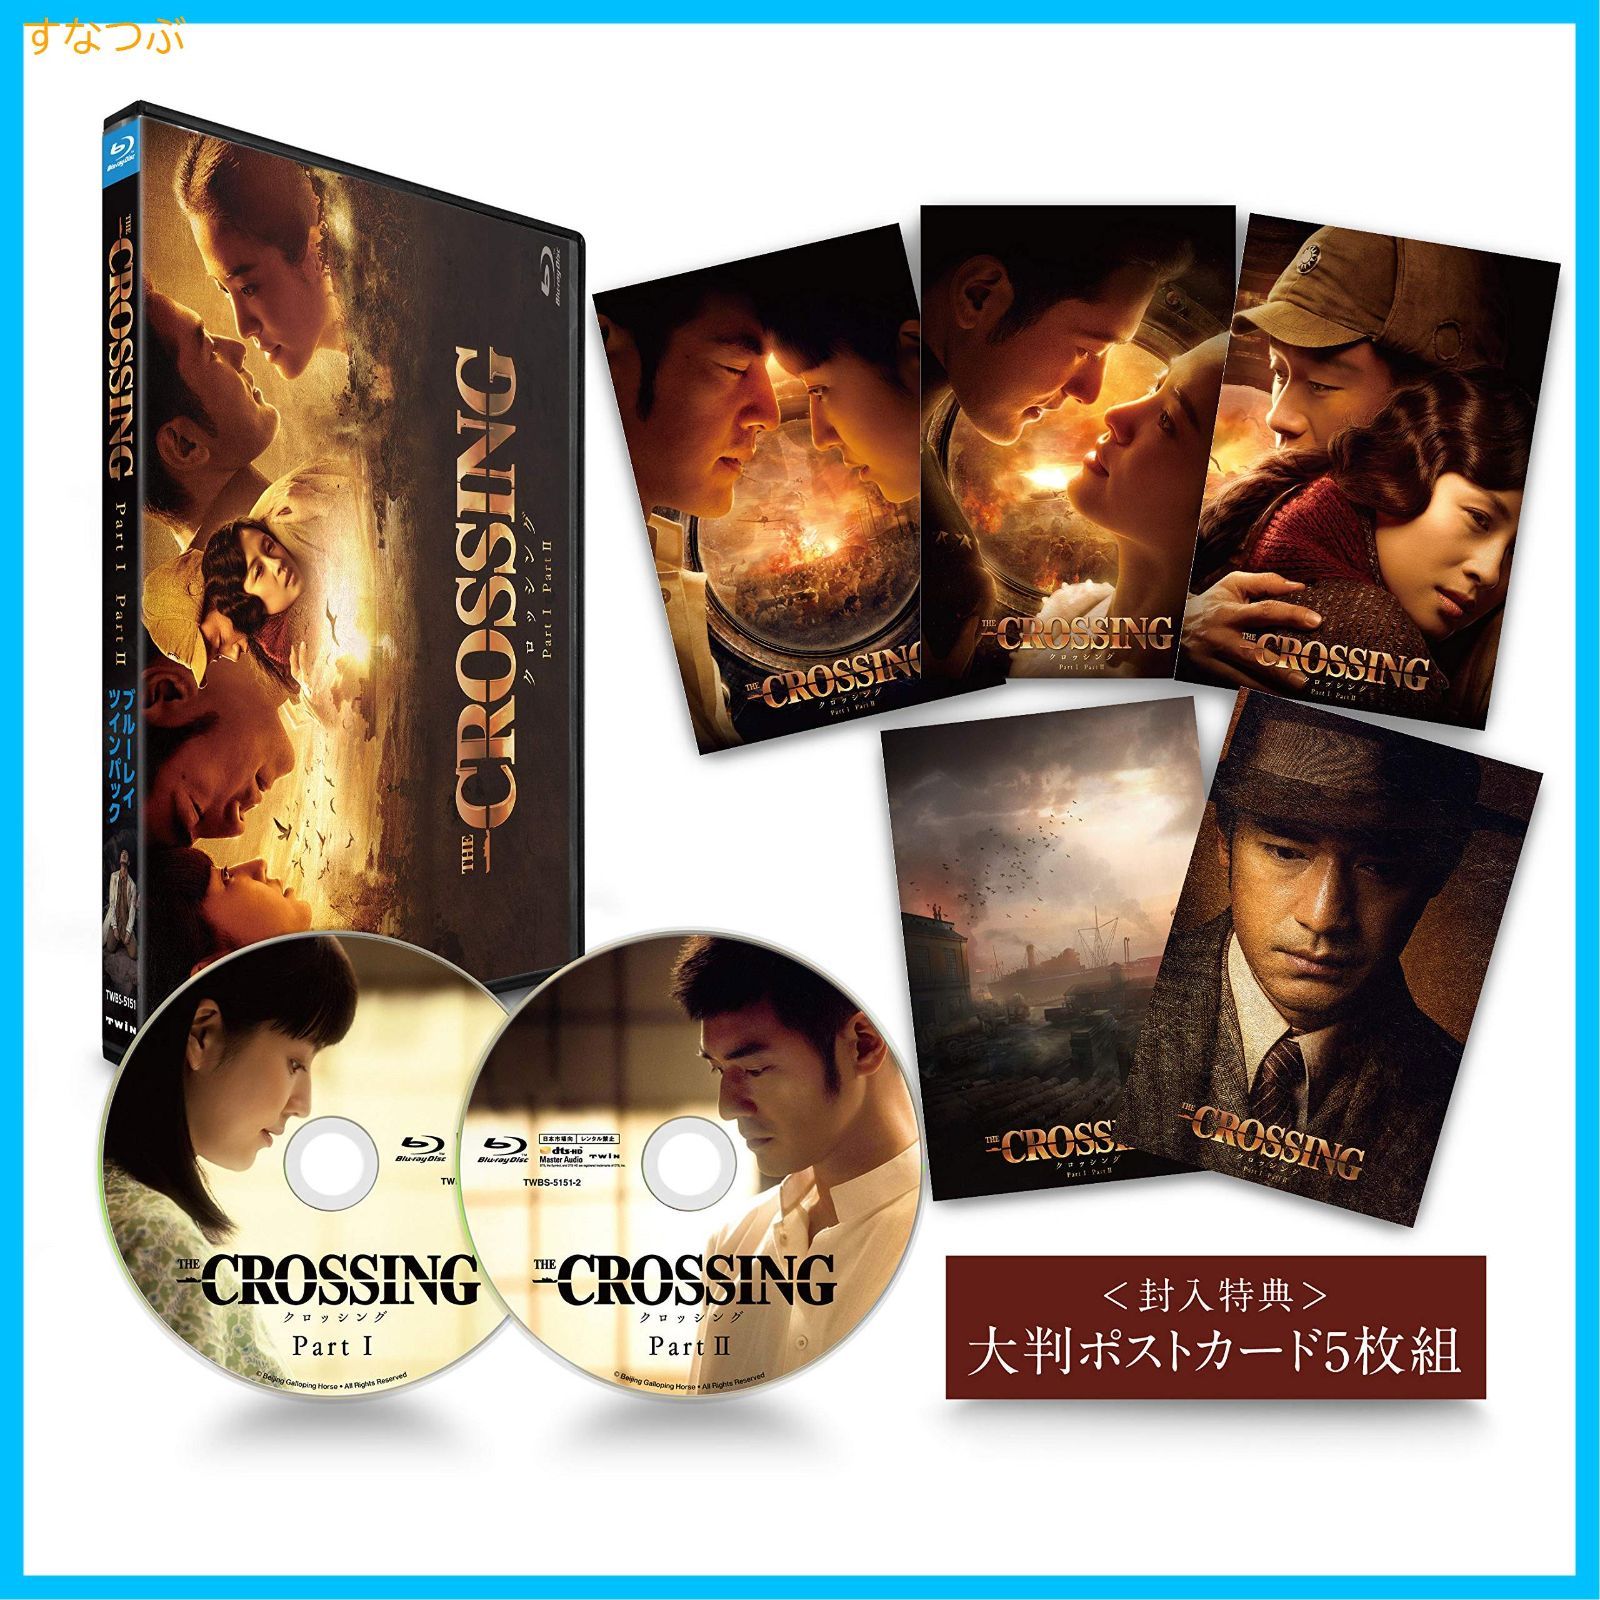 新品未開封】The Crossing/ザ・クロッシング Part Iu0026II ブルーレイツインパック [Blu-ray] 金城 武 (出演) 長澤まさみ  (出演) u0026 1 その他 形式: Blu-ray - メルカリ